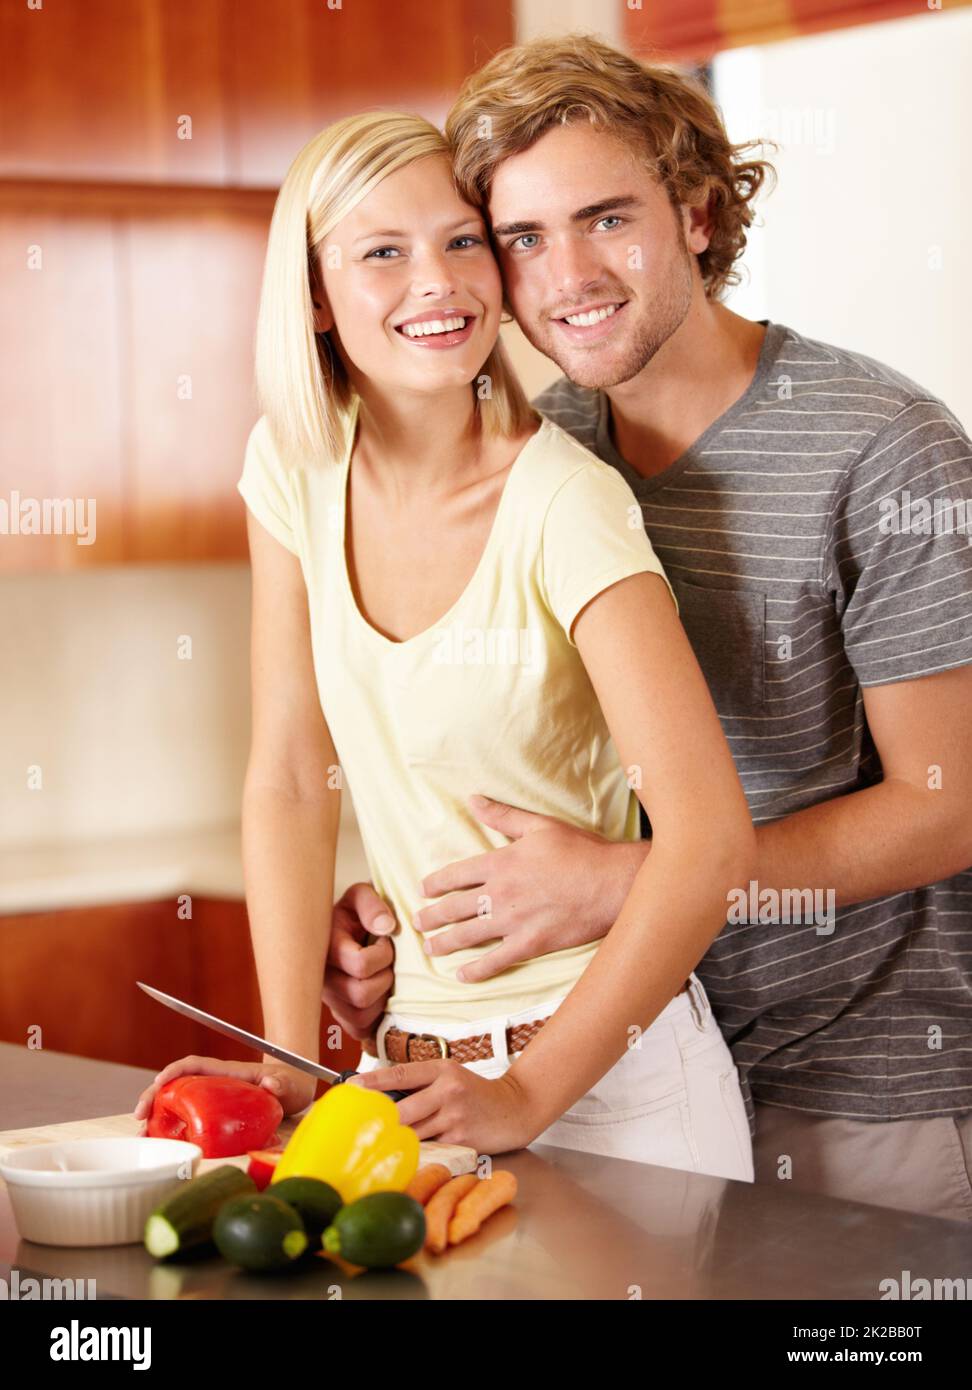 Romantik in der Küche. Porträt eines glücklichen jungen Paares, das in der Küche steht. Stockfoto